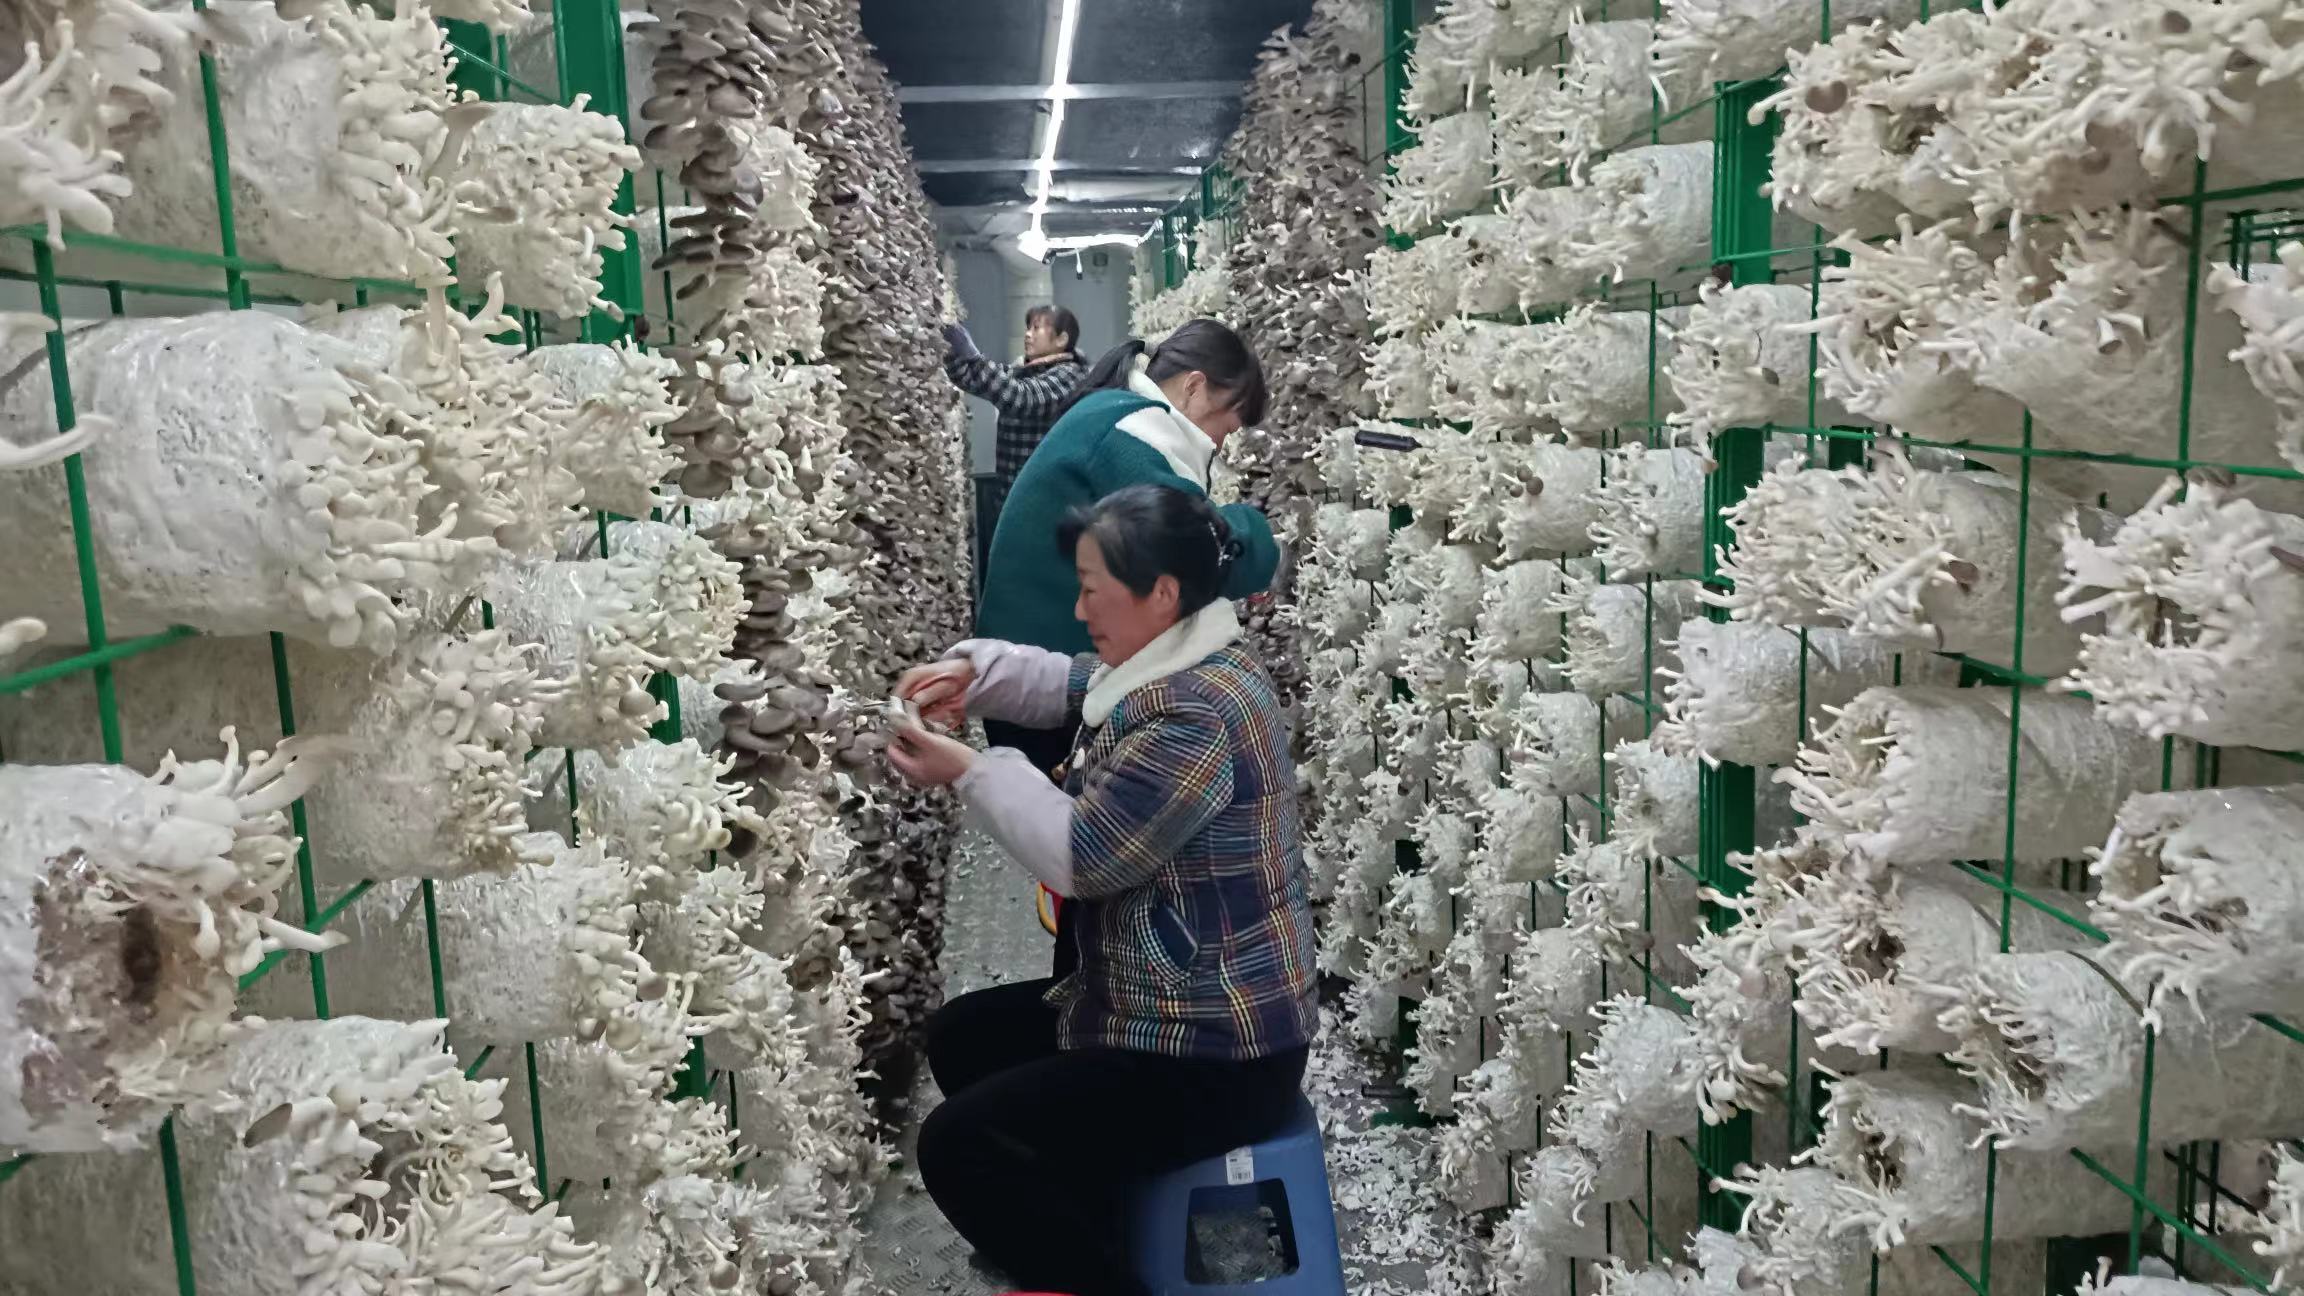 安徽蕈苑生物科技有限公司工人采摘秀珍菇。